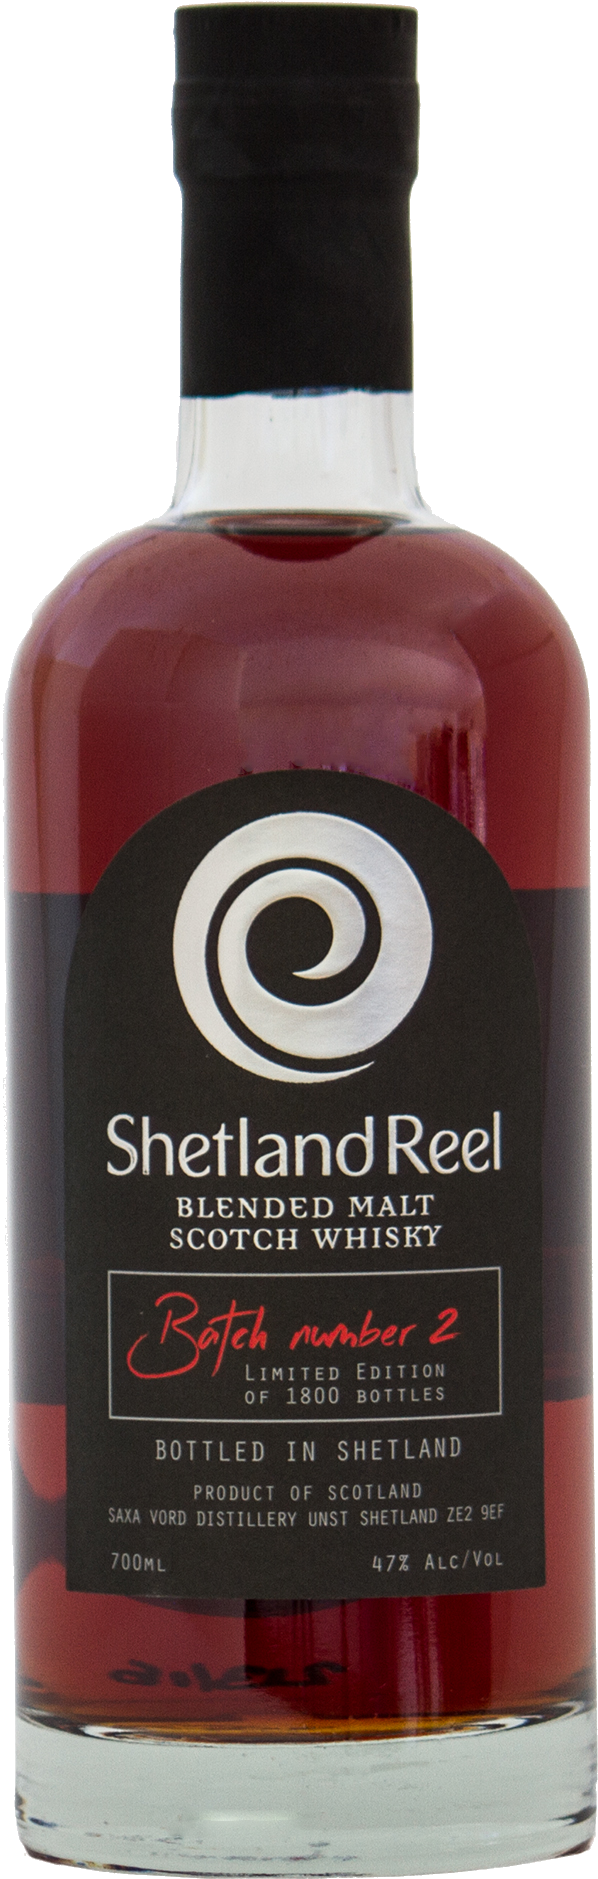 Shetland Reel Blended Malt Scotch Whisky - Shetland Reel At Saxa Vord Distillery (841x1938), Png Download